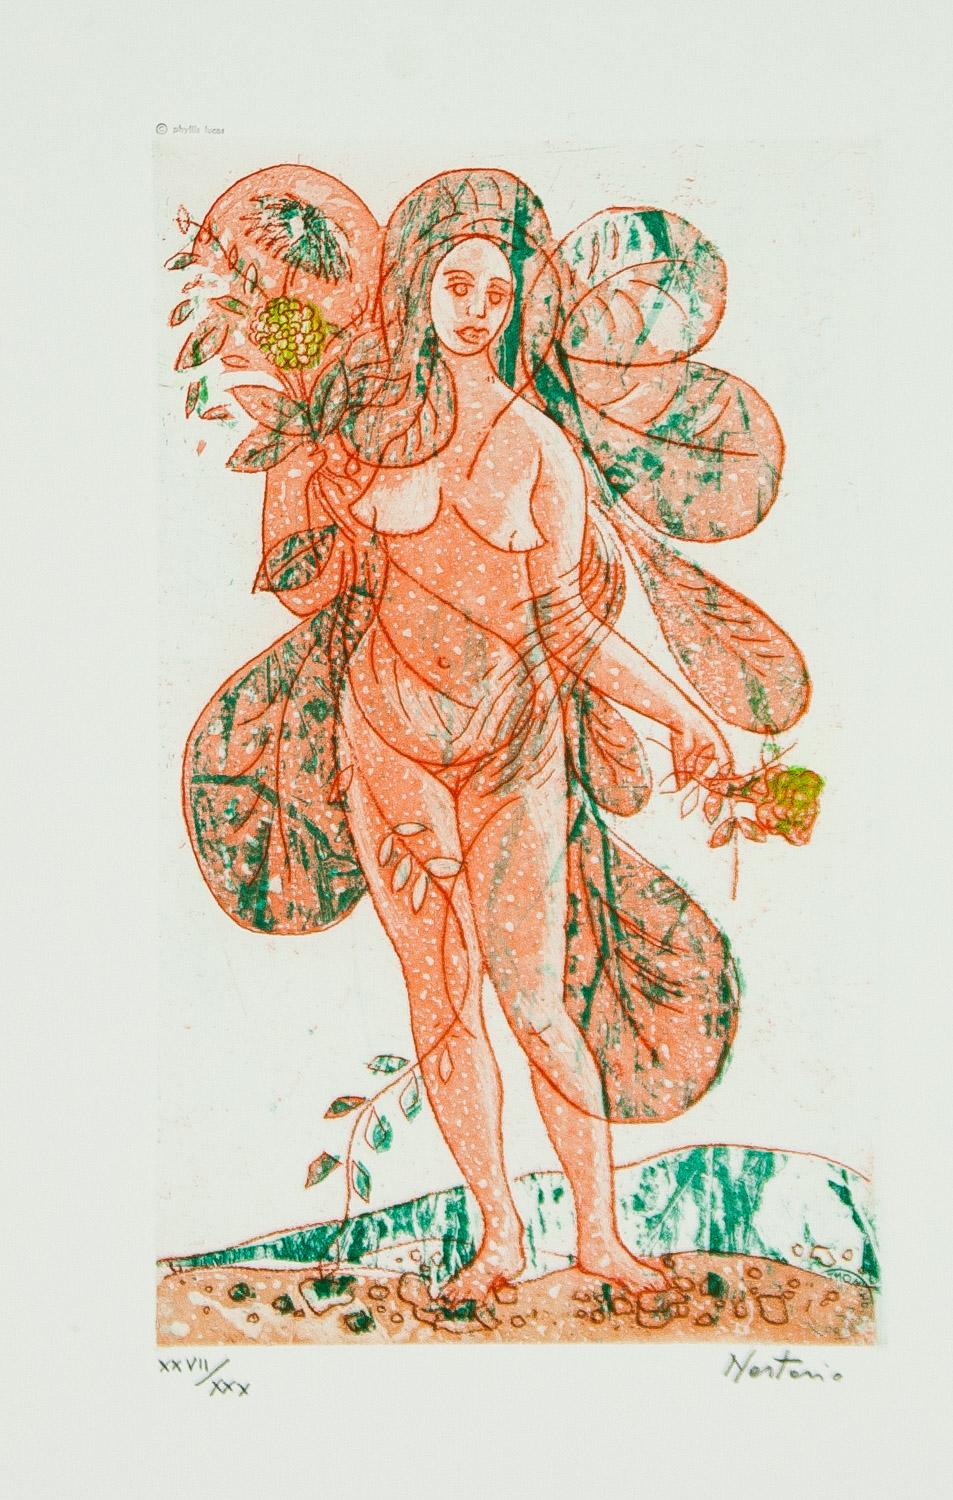    Leaves of Love-Orange Lady est une lithographie originale signée à tirage limité (XXII/ XXX) d'Alessandro Nastasio représentant un nu de couleur orange tenant des fleurs dans chaque main et se tenant debout avec ses pieds nus sur le sol. Elle